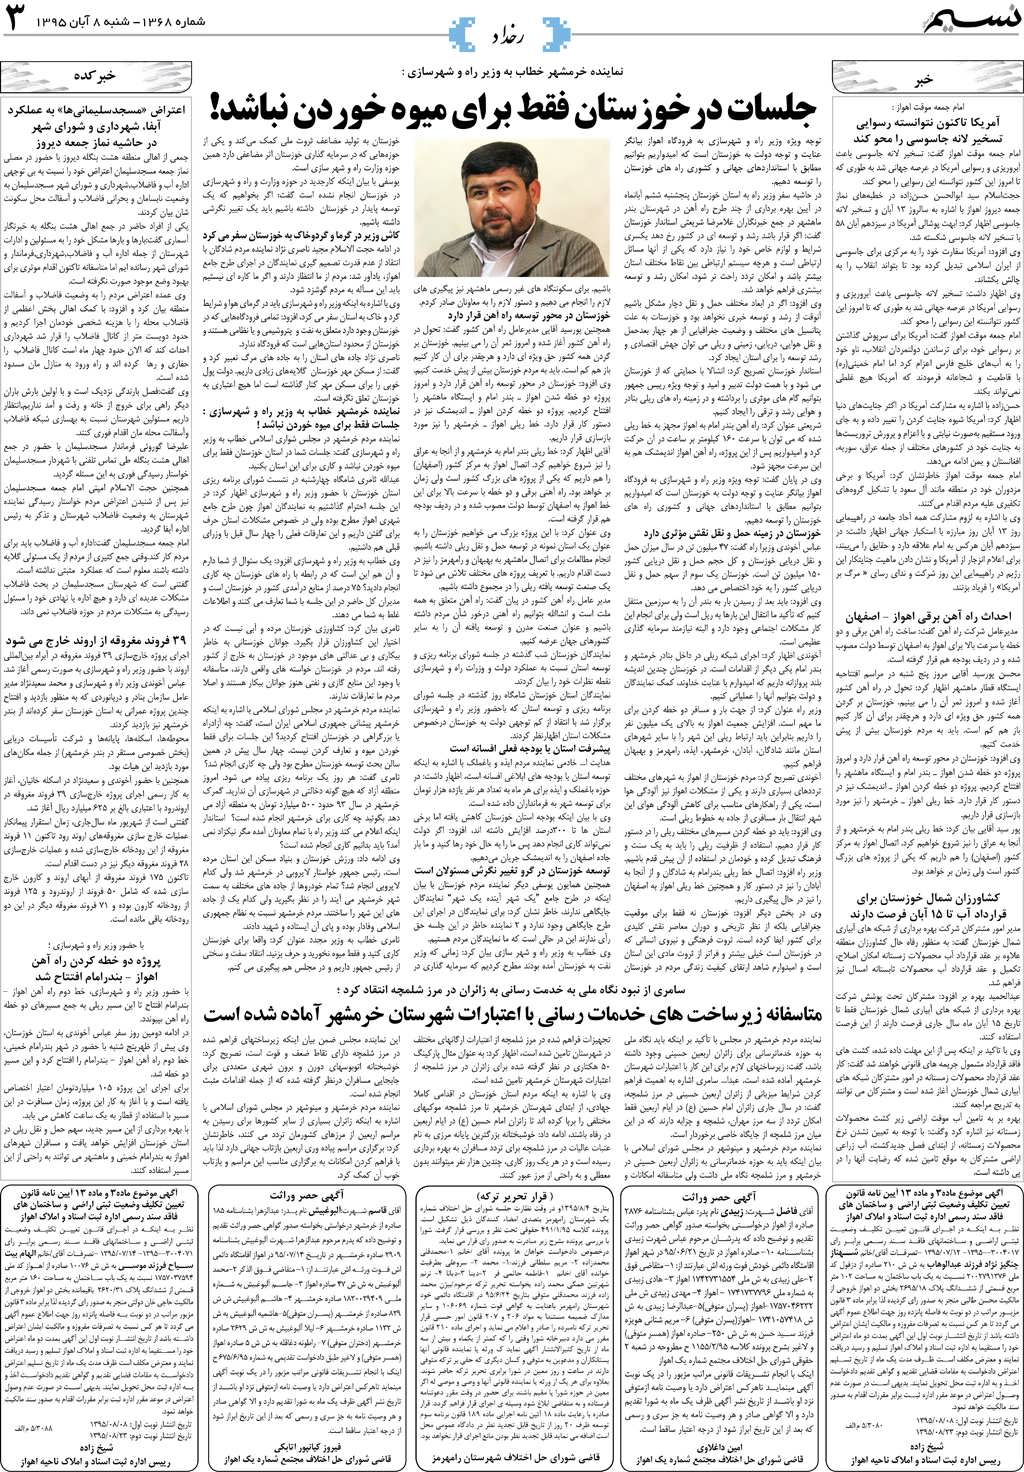 صفحه رخداد روزنامه نسیم شماره 1368